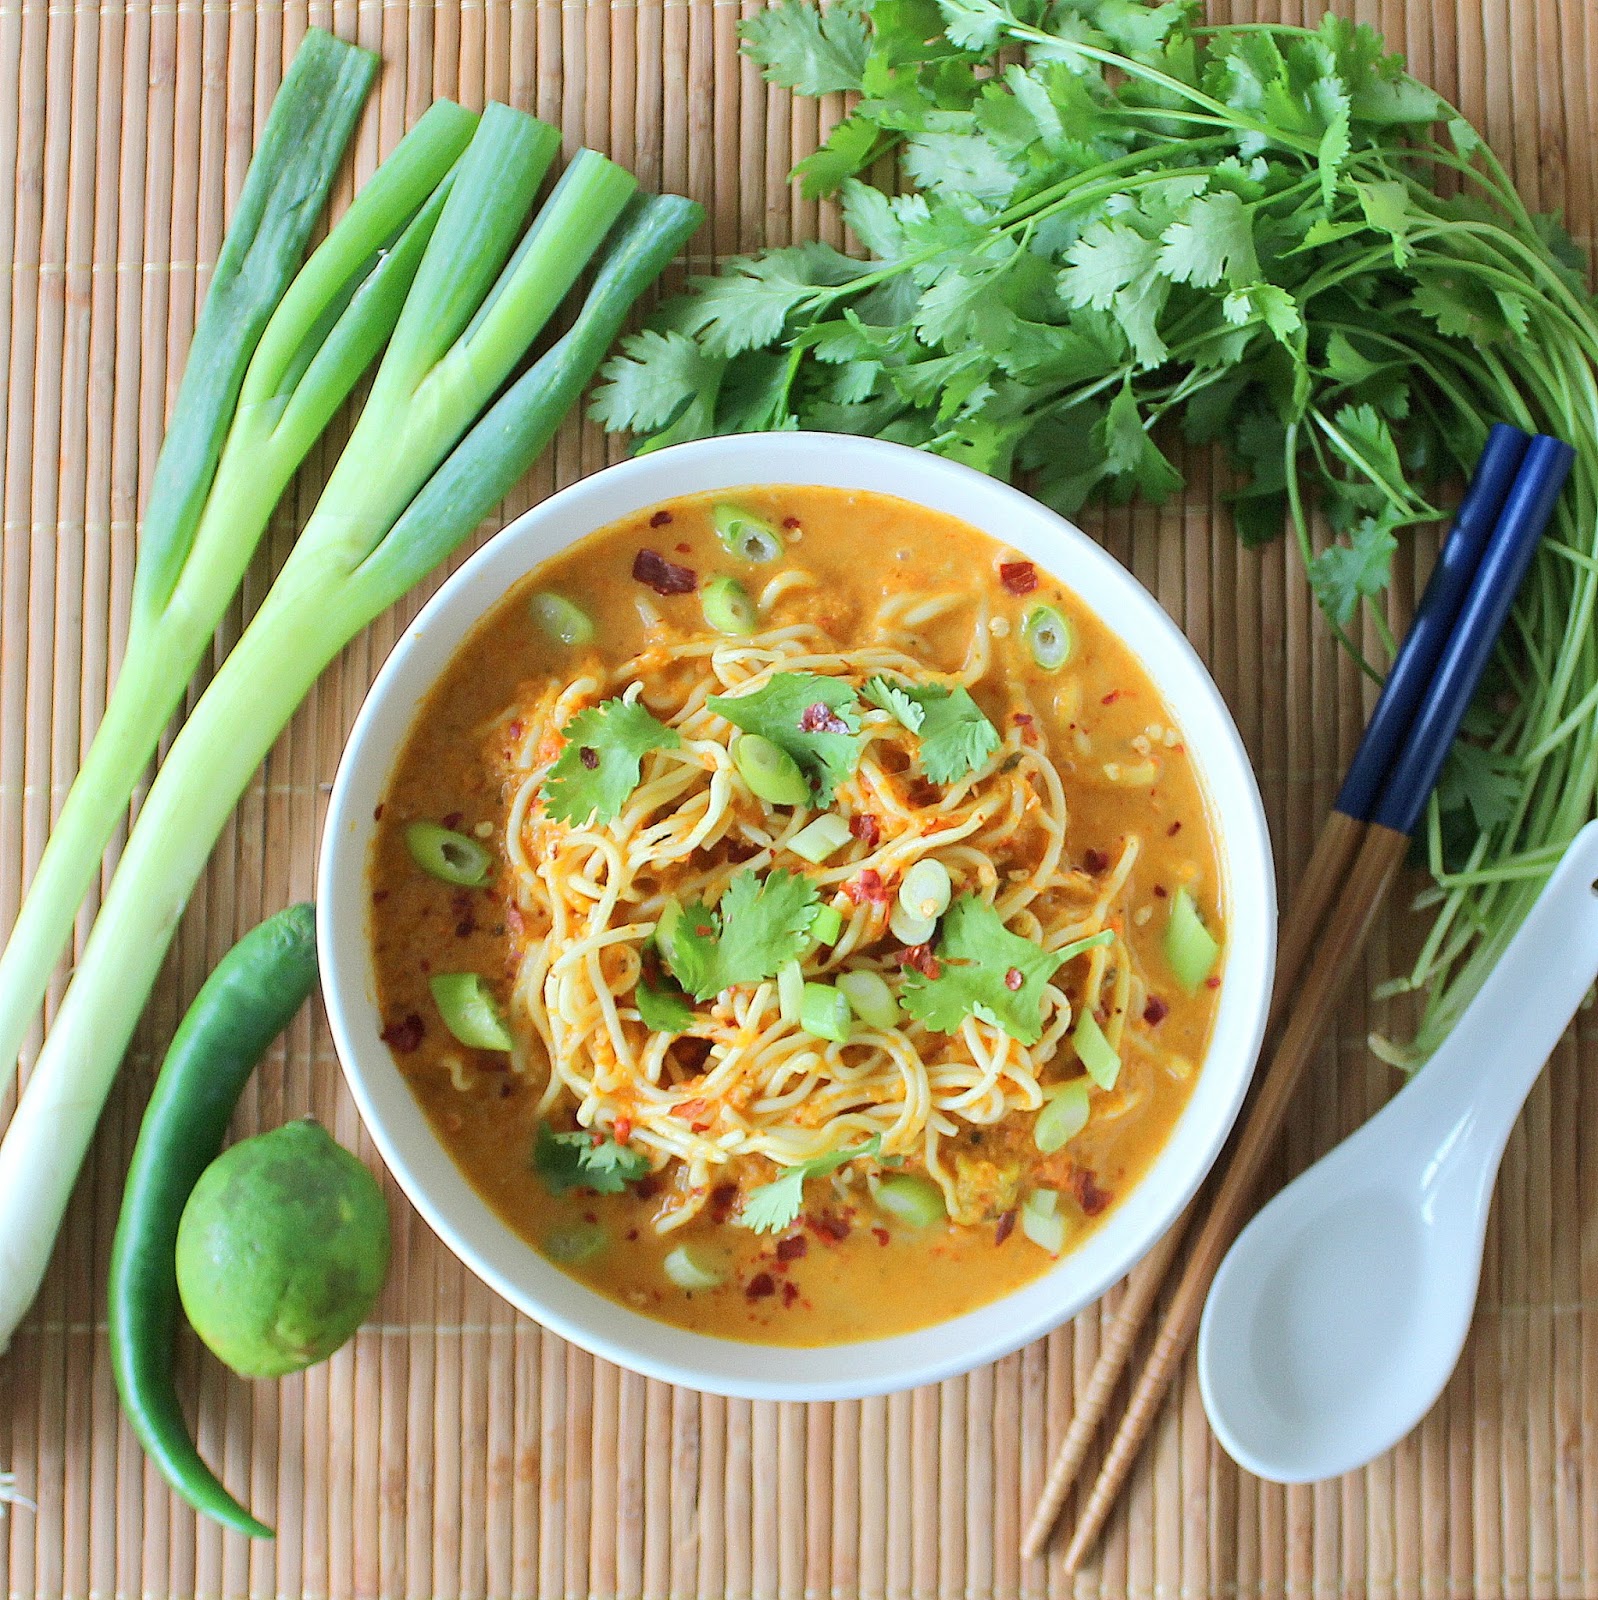 PicNic: Spicy Thai Noodle Soup